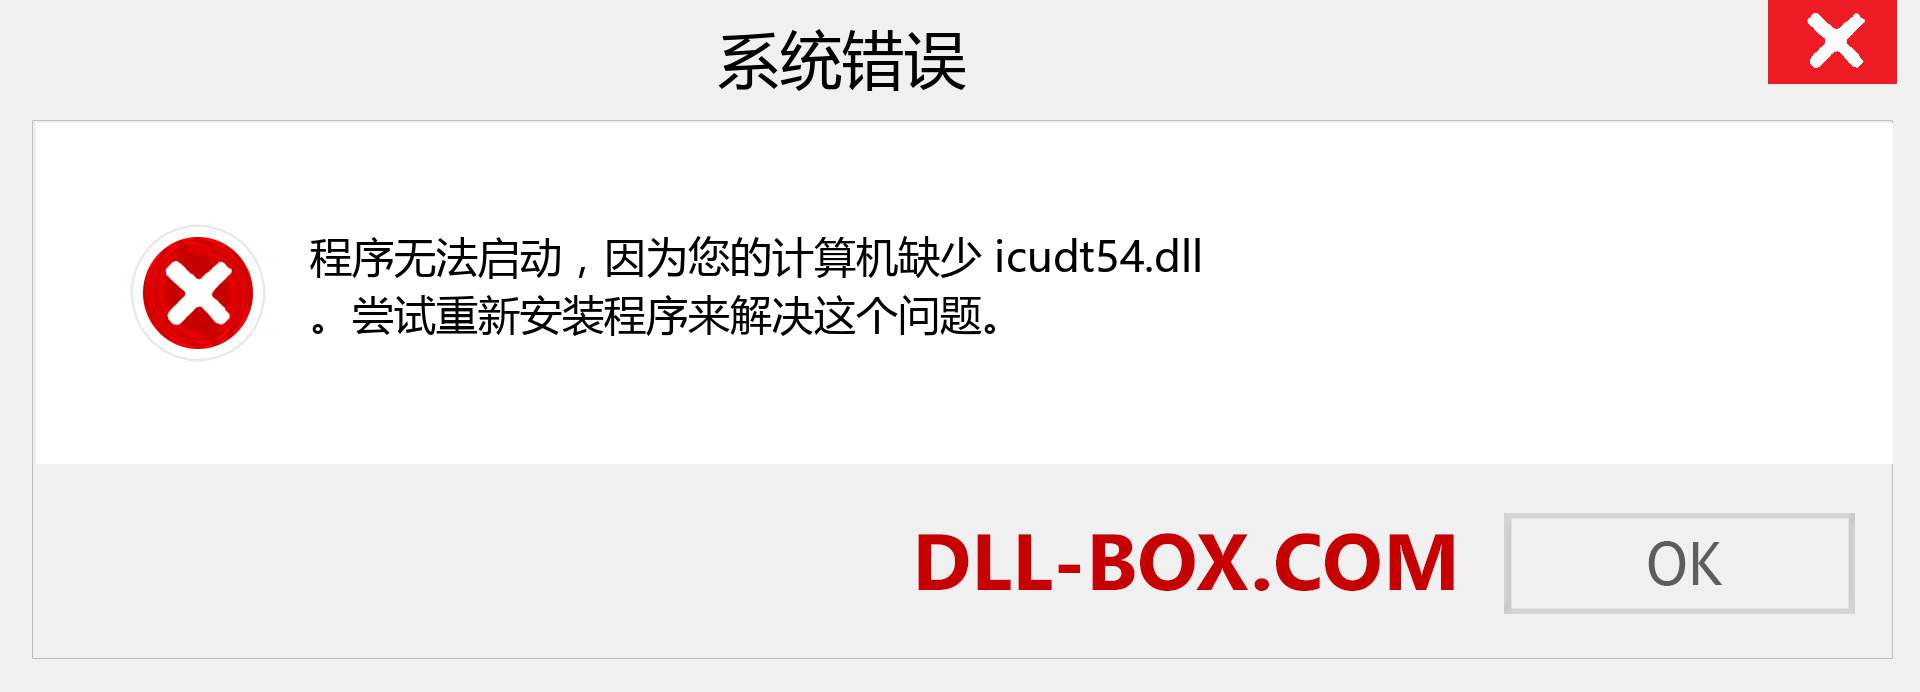 icudt54.dll 文件丢失？。 适用于 Windows 7、8、10 的下载 - 修复 Windows、照片、图像上的 icudt54 dll 丢失错误